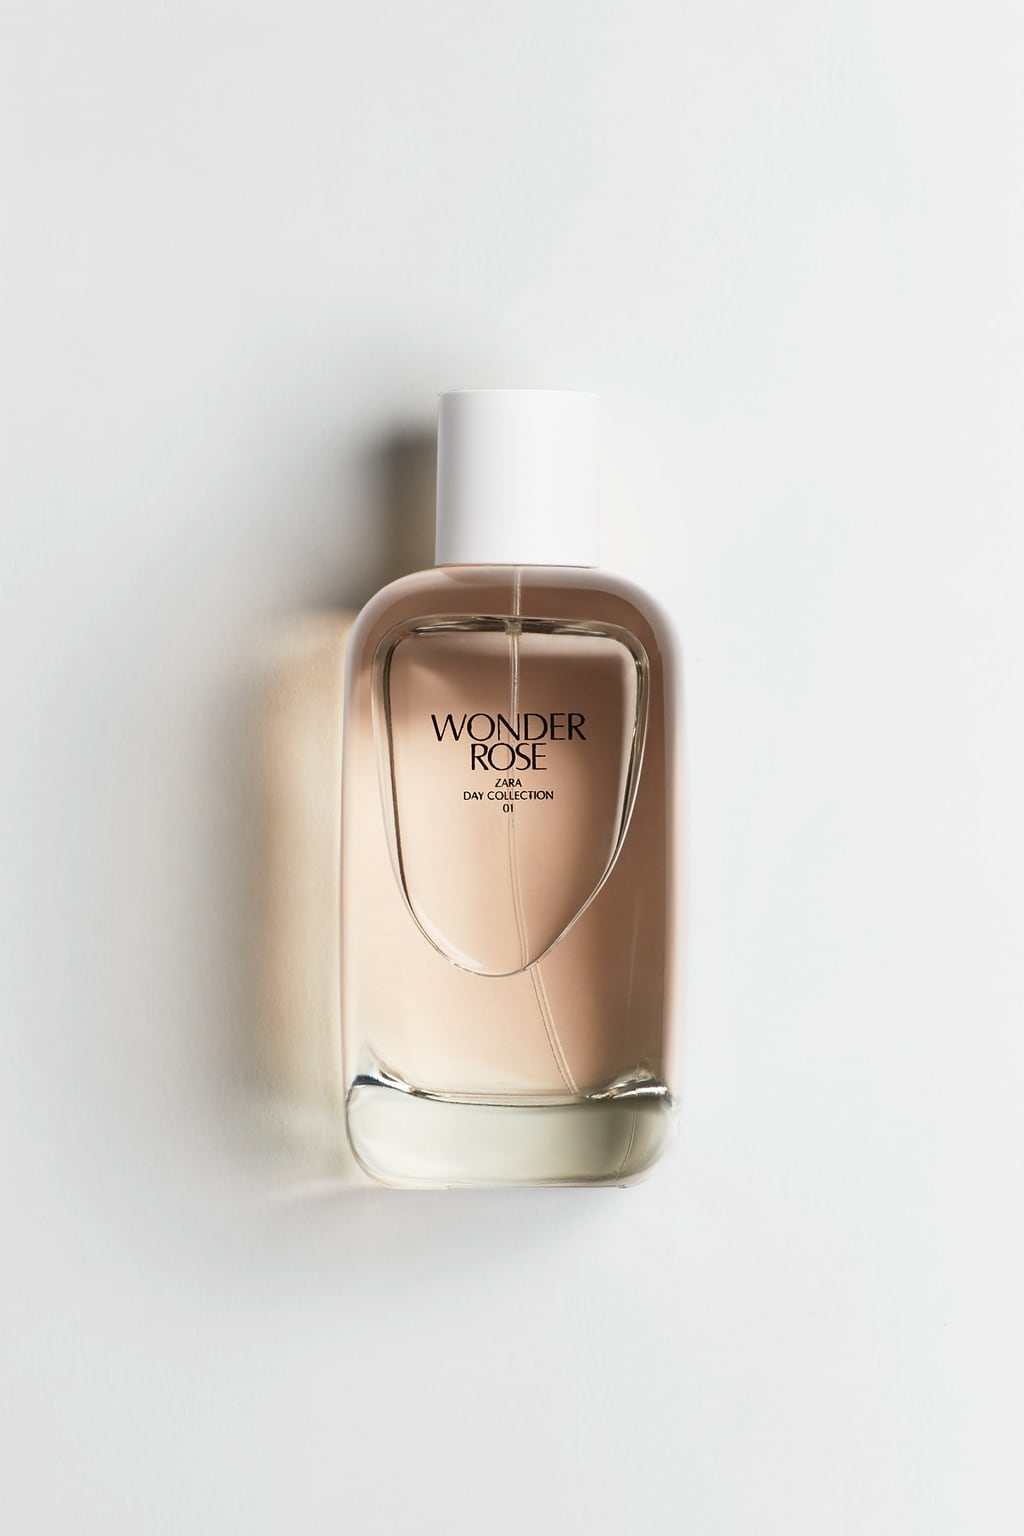 Golden Decade Zara perfume - a fragrance for women 2021